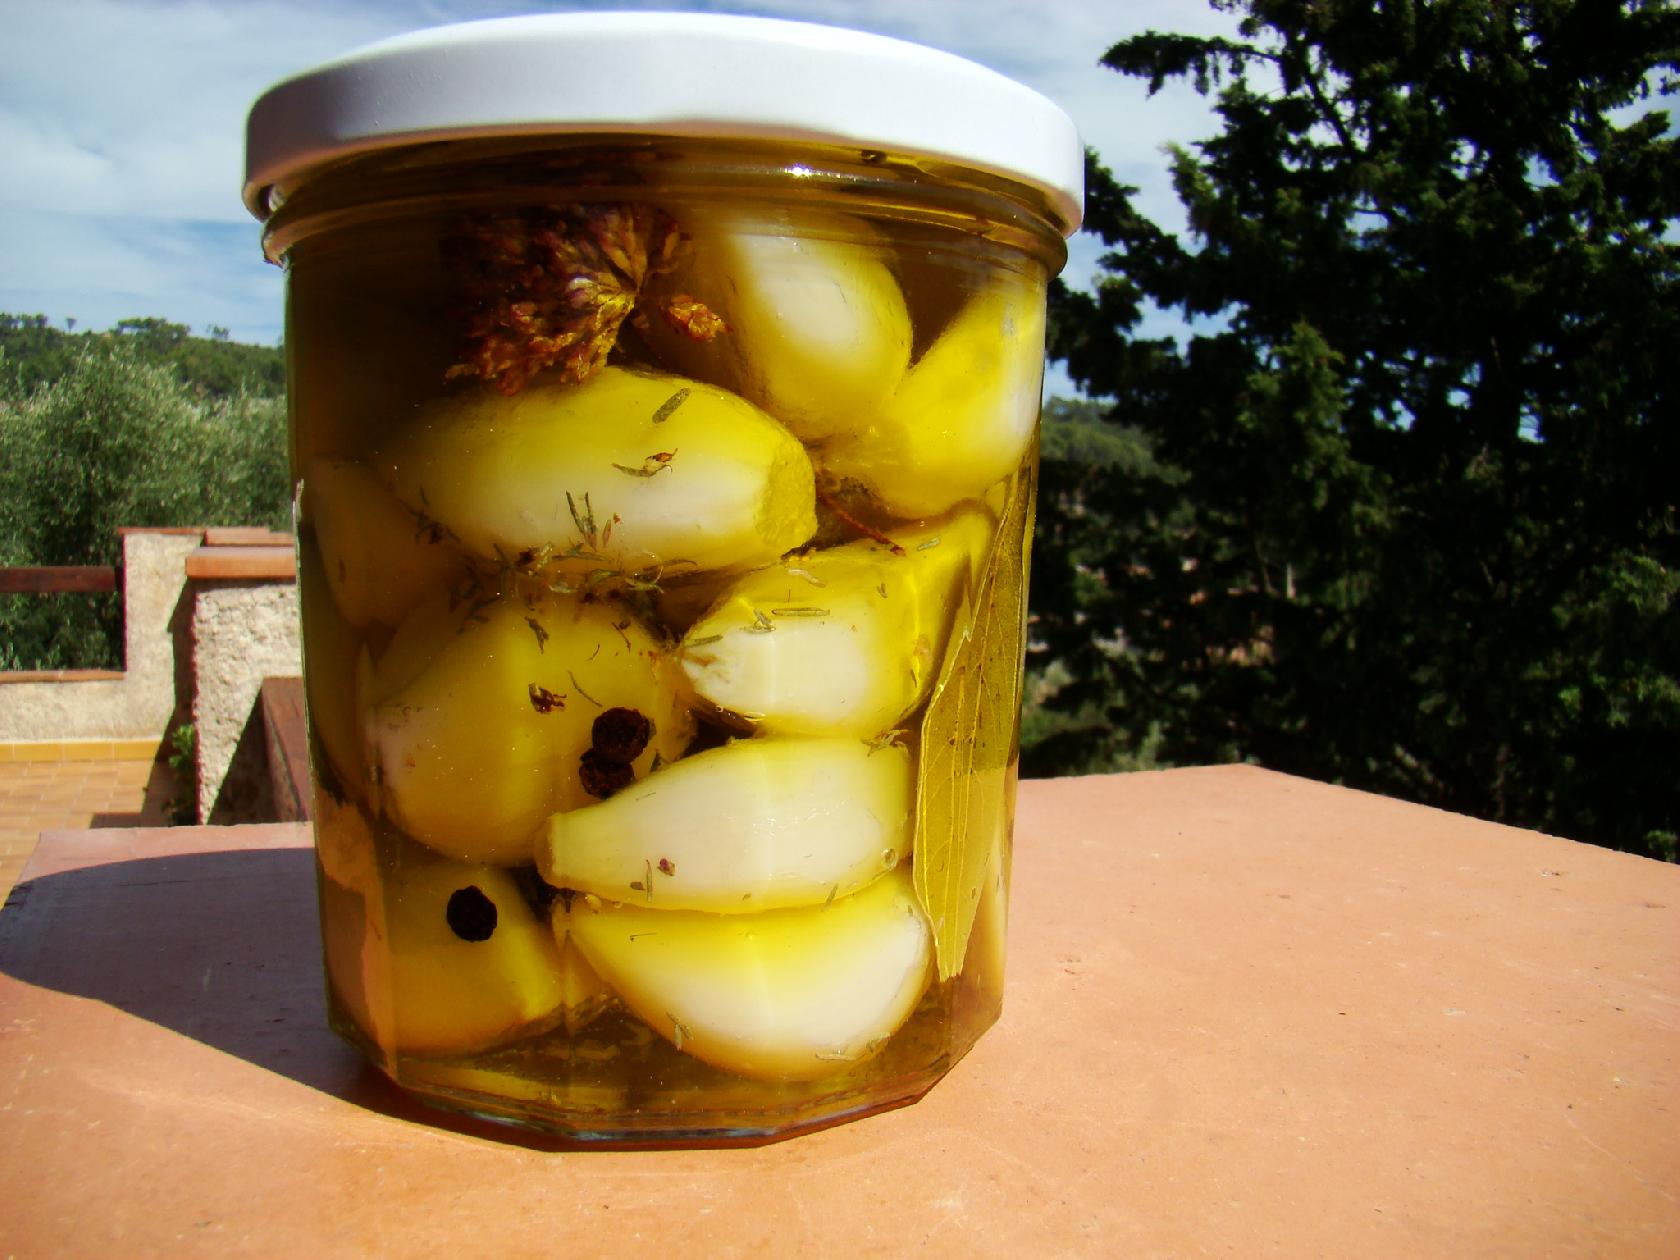 Aïl conservé sous huile d'olive (amuse gueule) - La Cachina